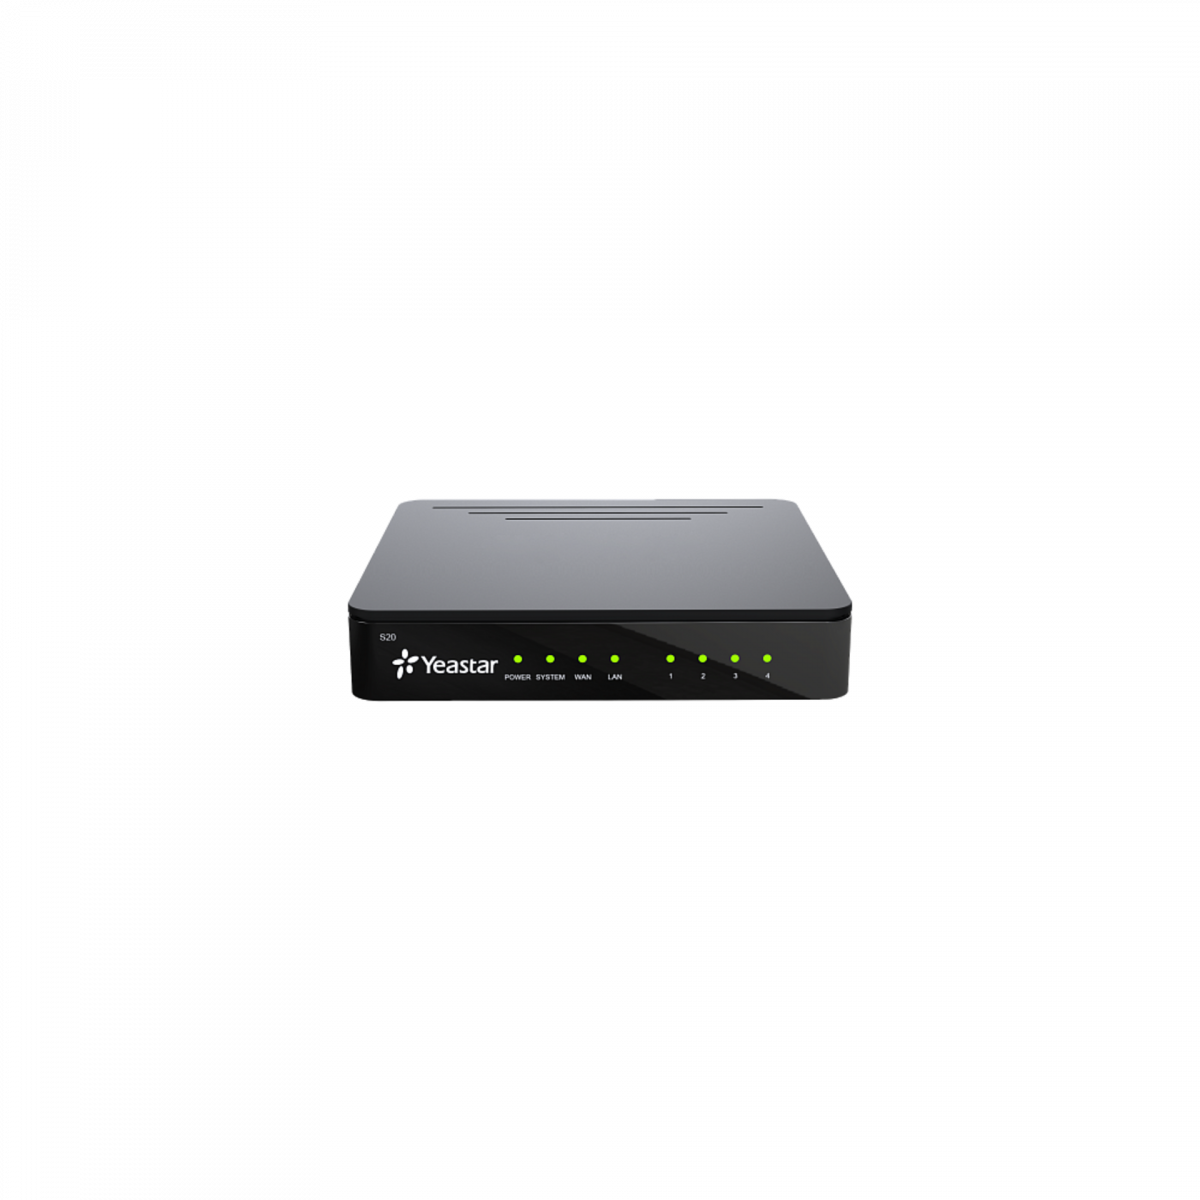 IP АТС Yeastar S20, 20 абонентов и 10 вызовов, поддержка FXO, FXS, GSM, BRI